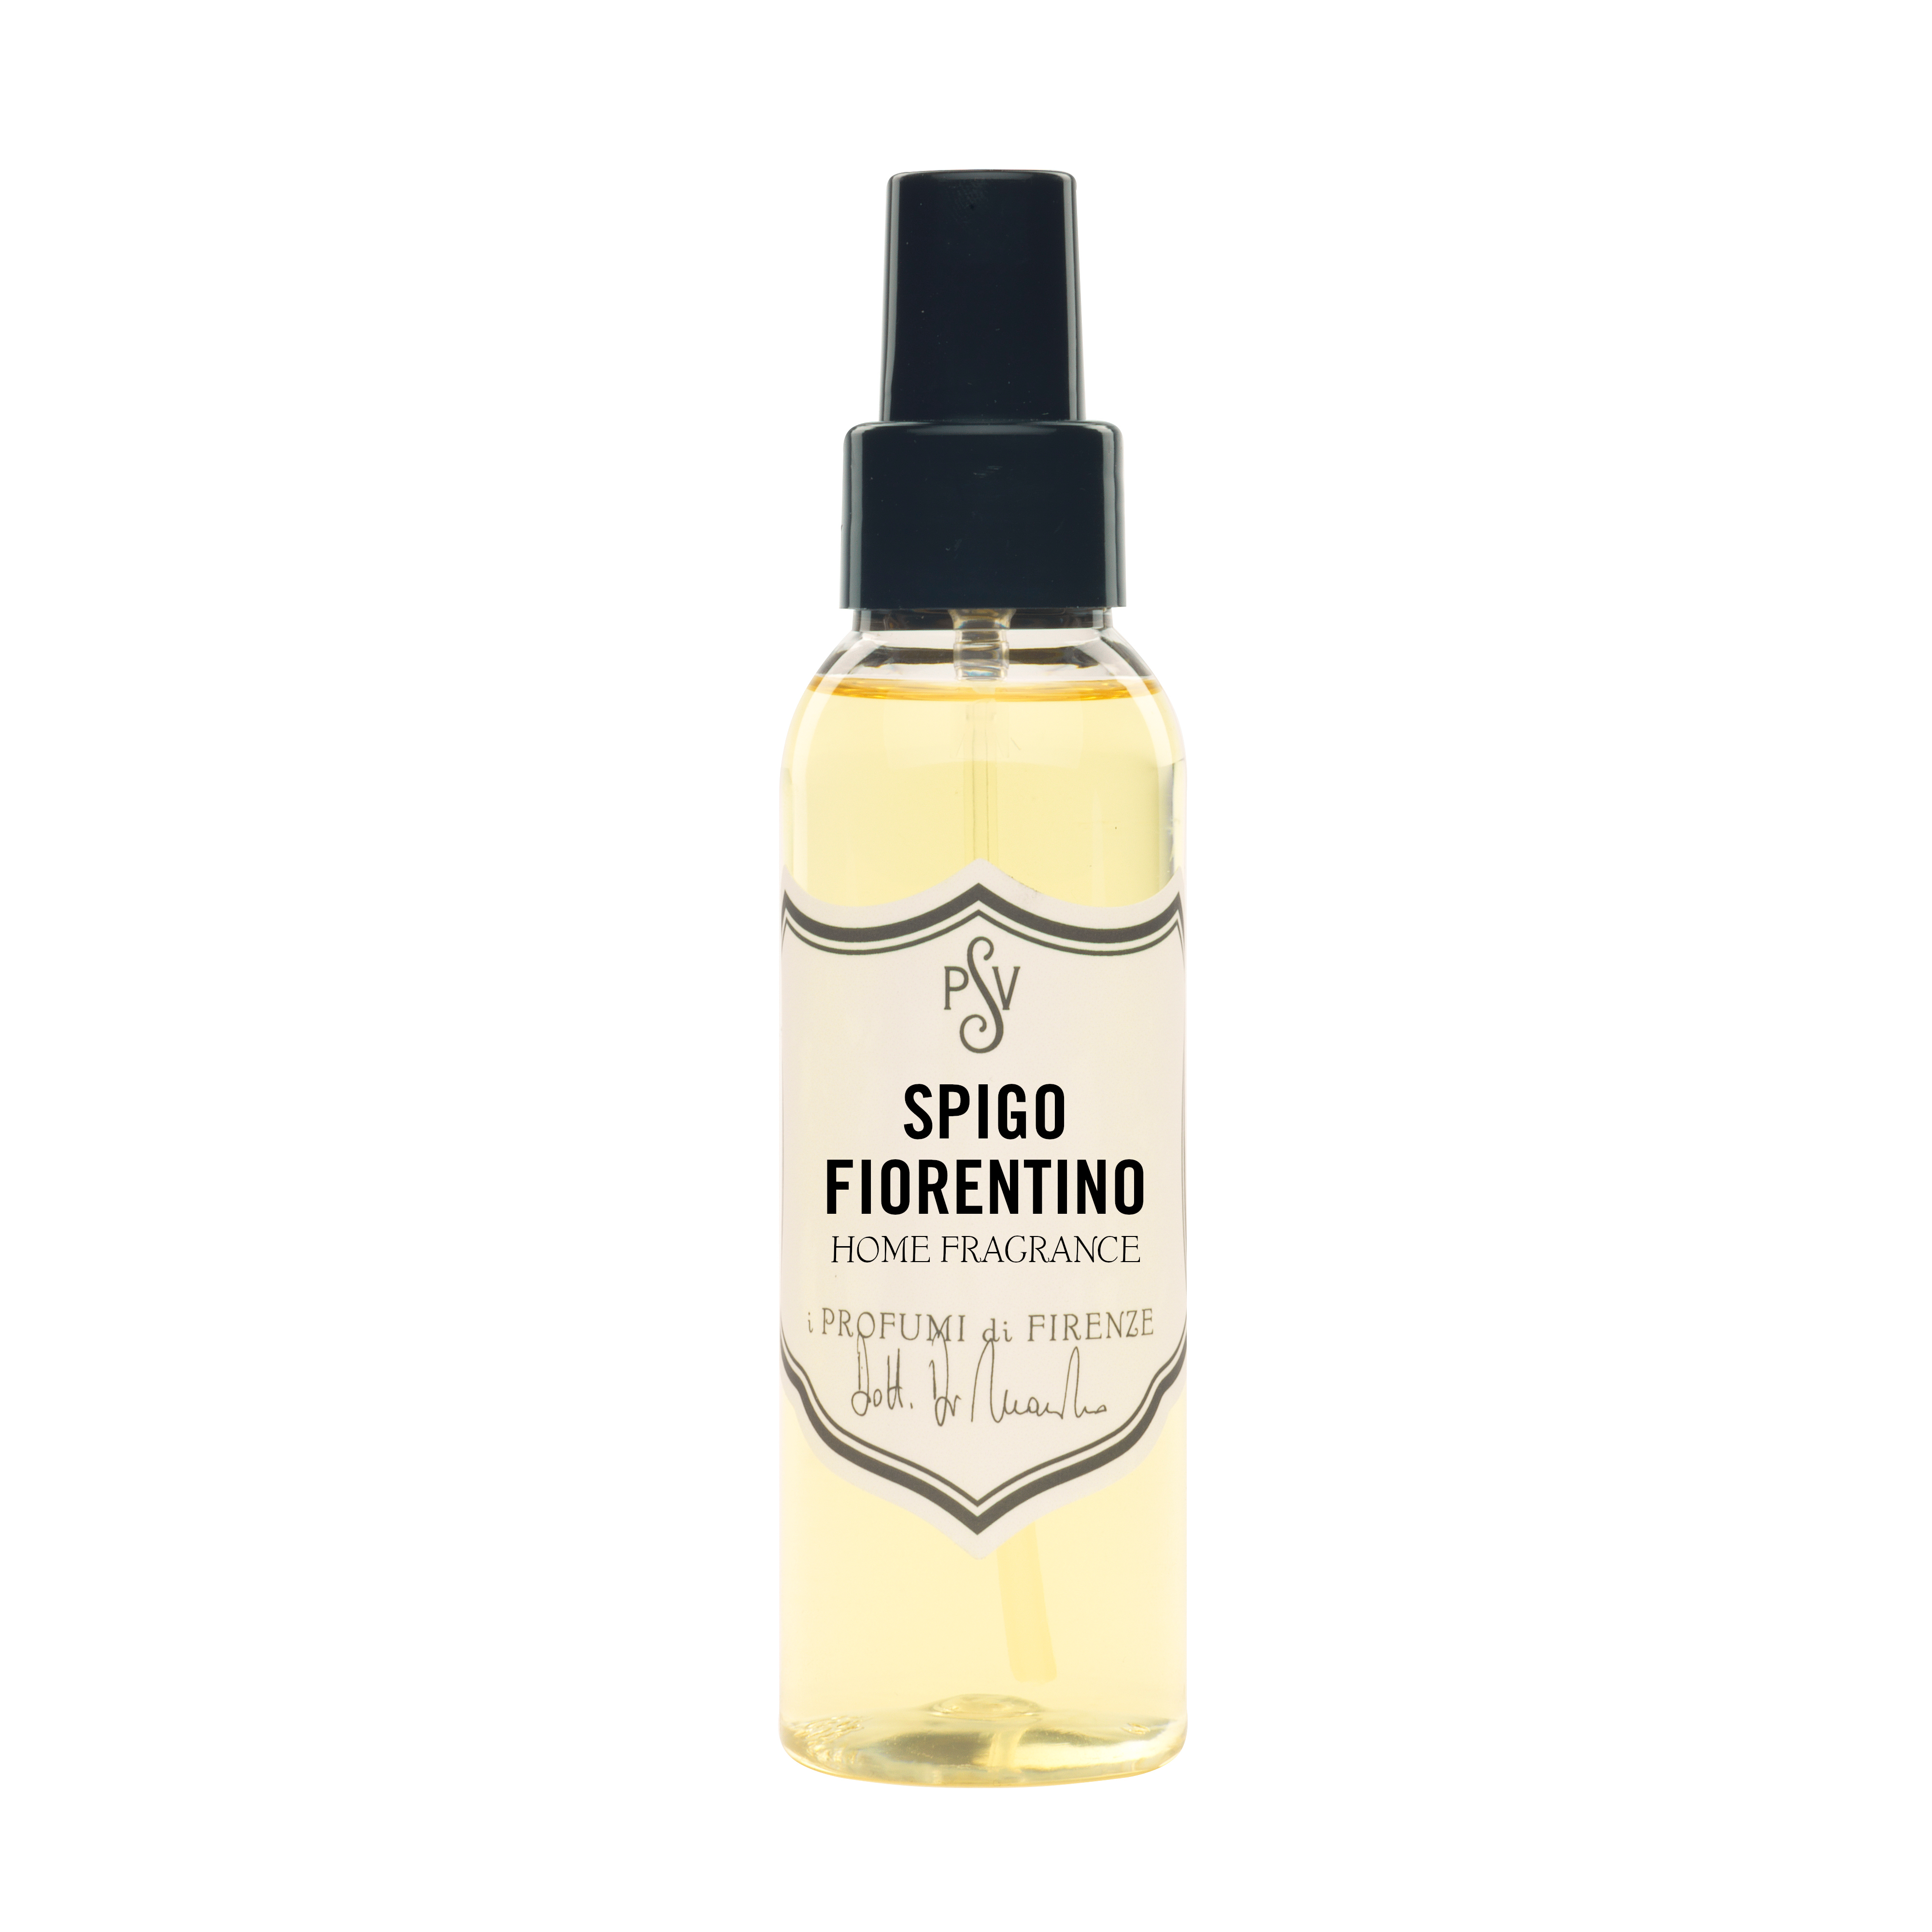 SPIGO FIORENTINO - Home Fragrance-4494